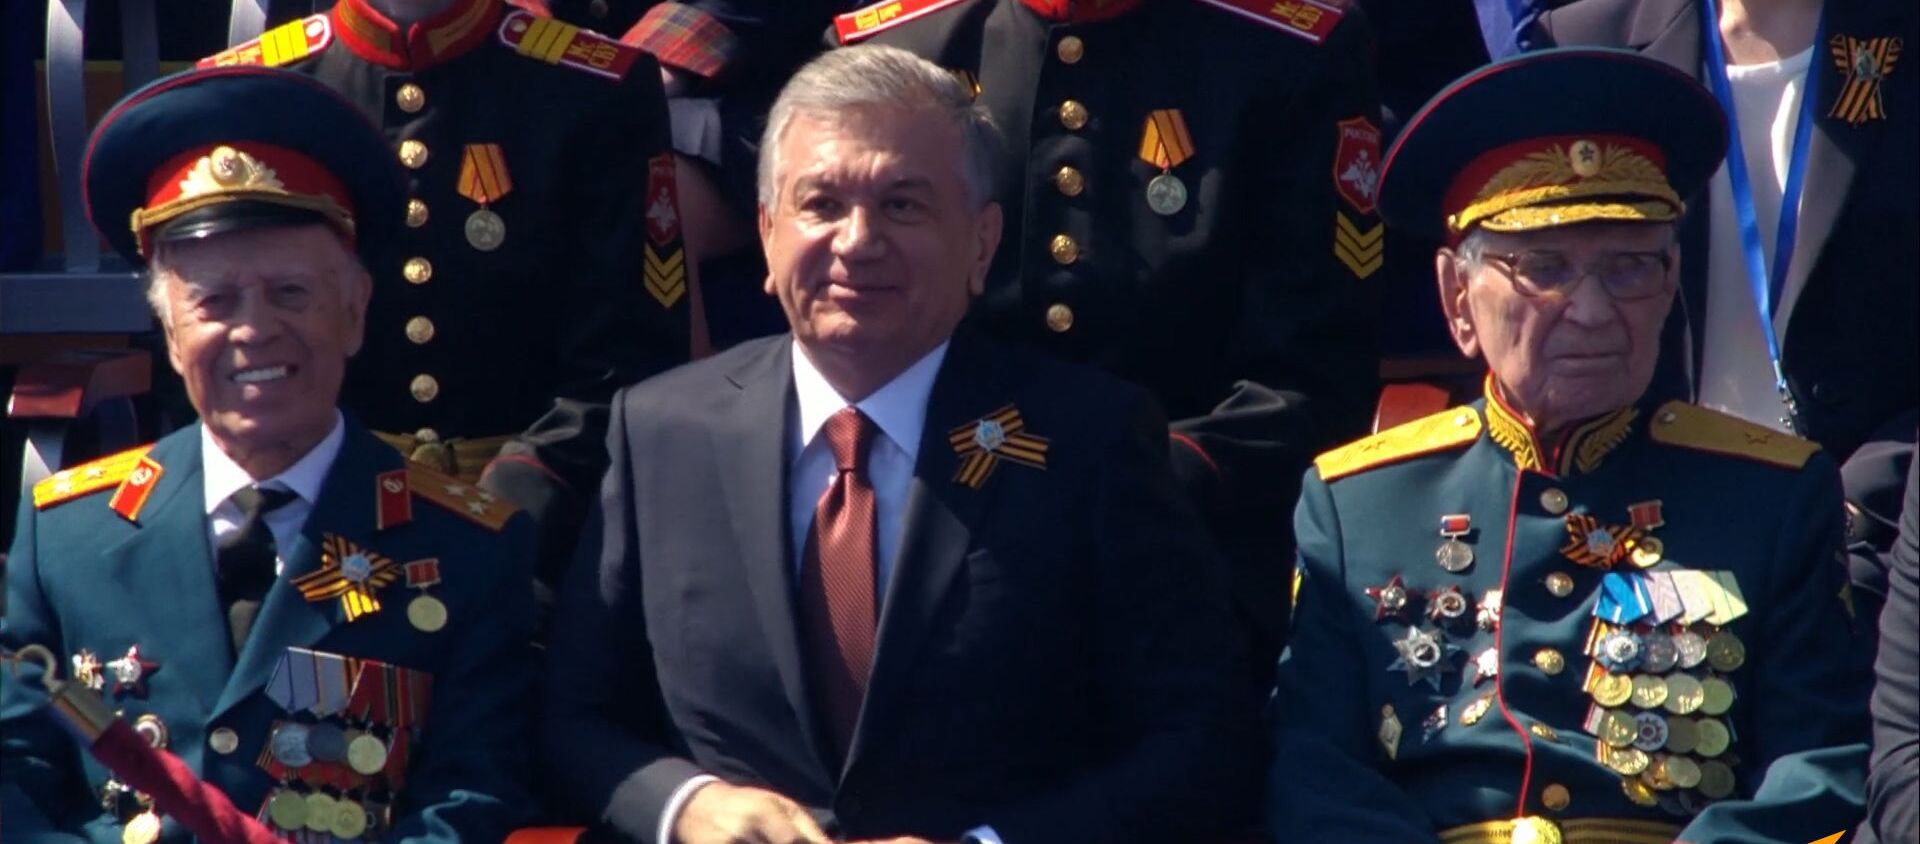 Шавкат Мирзиёев в время парада в честь 75-летия Победы - Sputnik Узбекистан, 1920, 25.06.2020